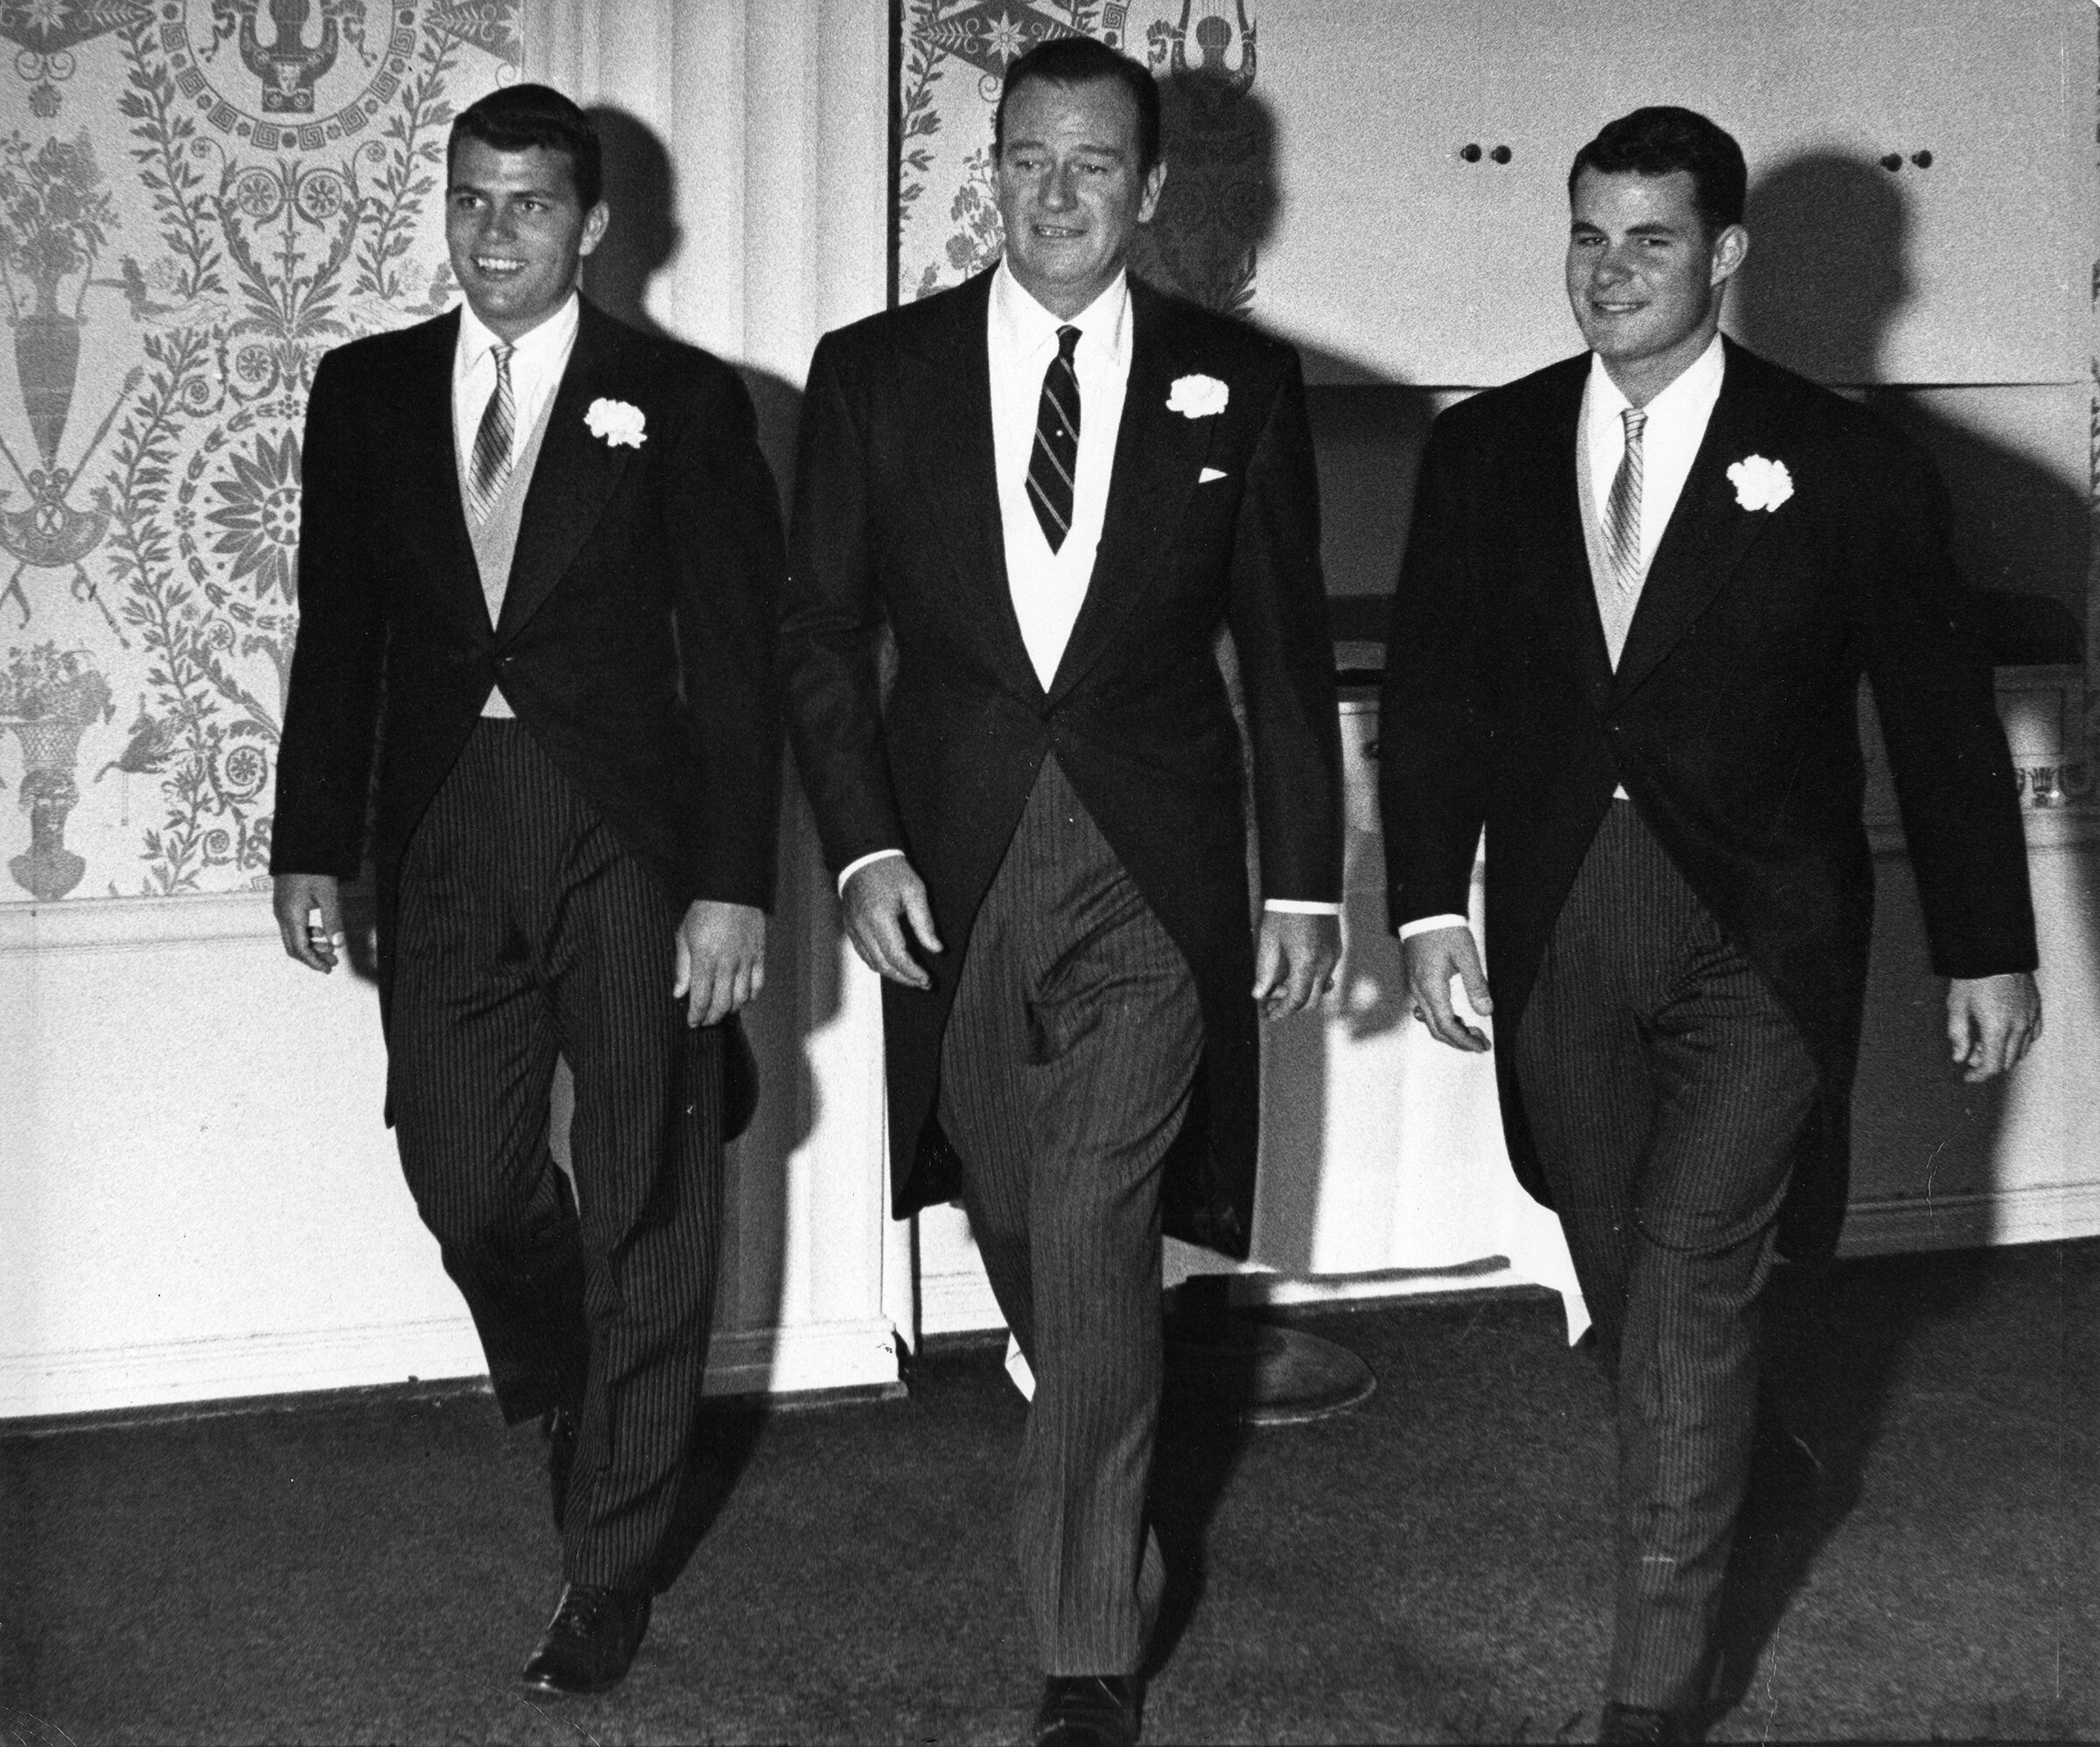 John Wayne with his sons Patrick (left) and Michael (right) make an entrance at Antonia Wayne’s wedding.